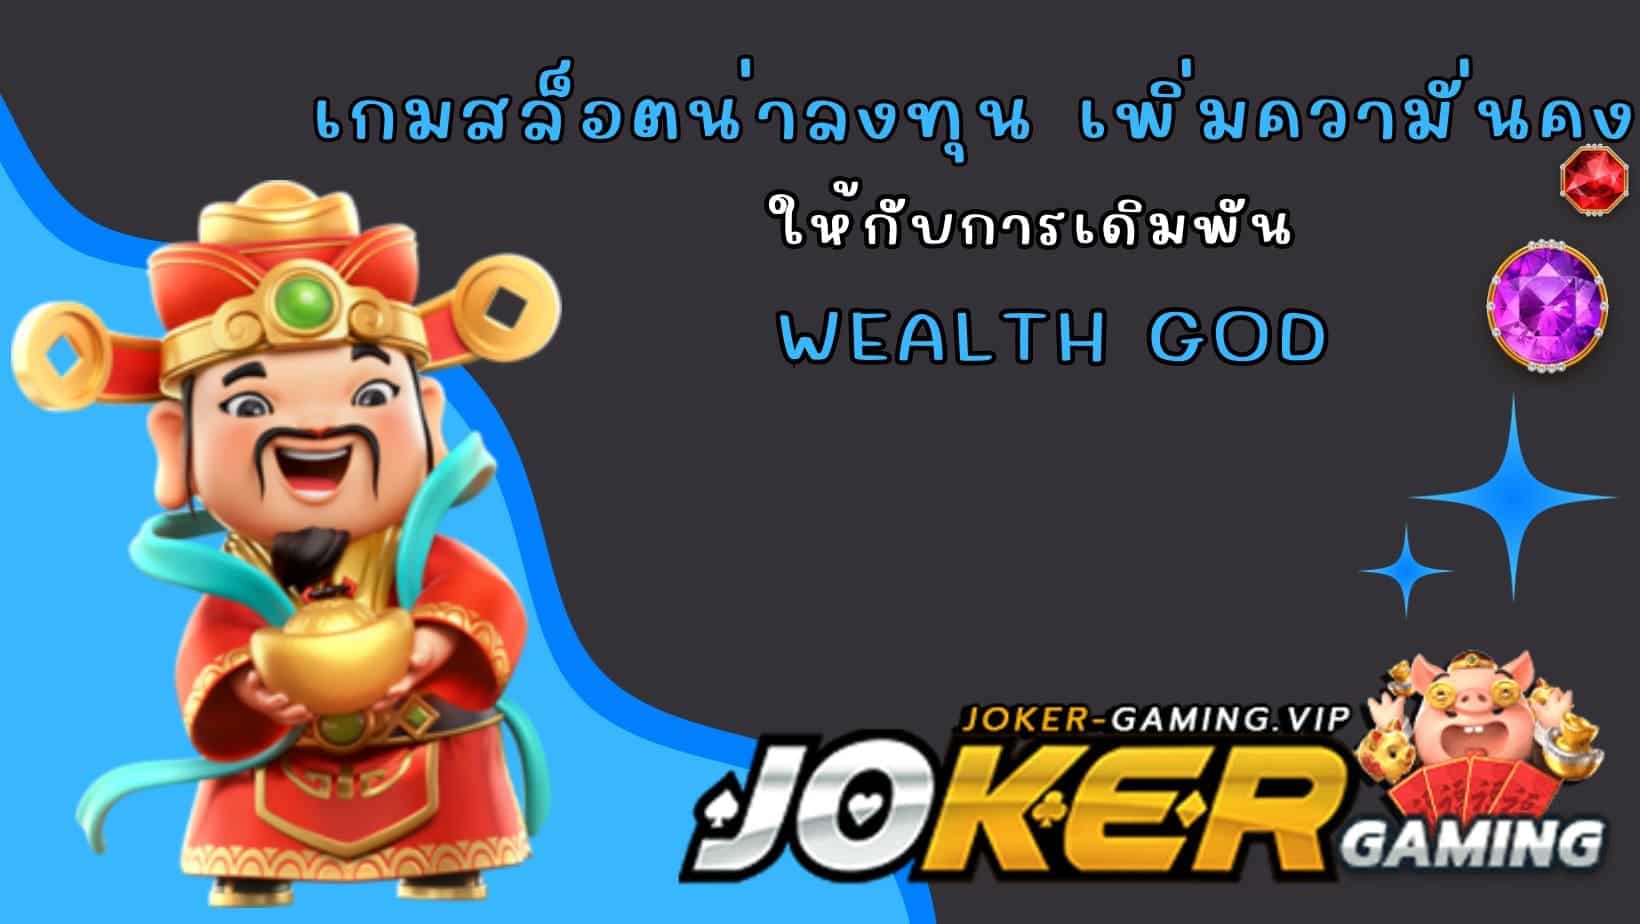 Wealth God เกมสล็อตน่าลงทุน เพิ่มความั่นคง